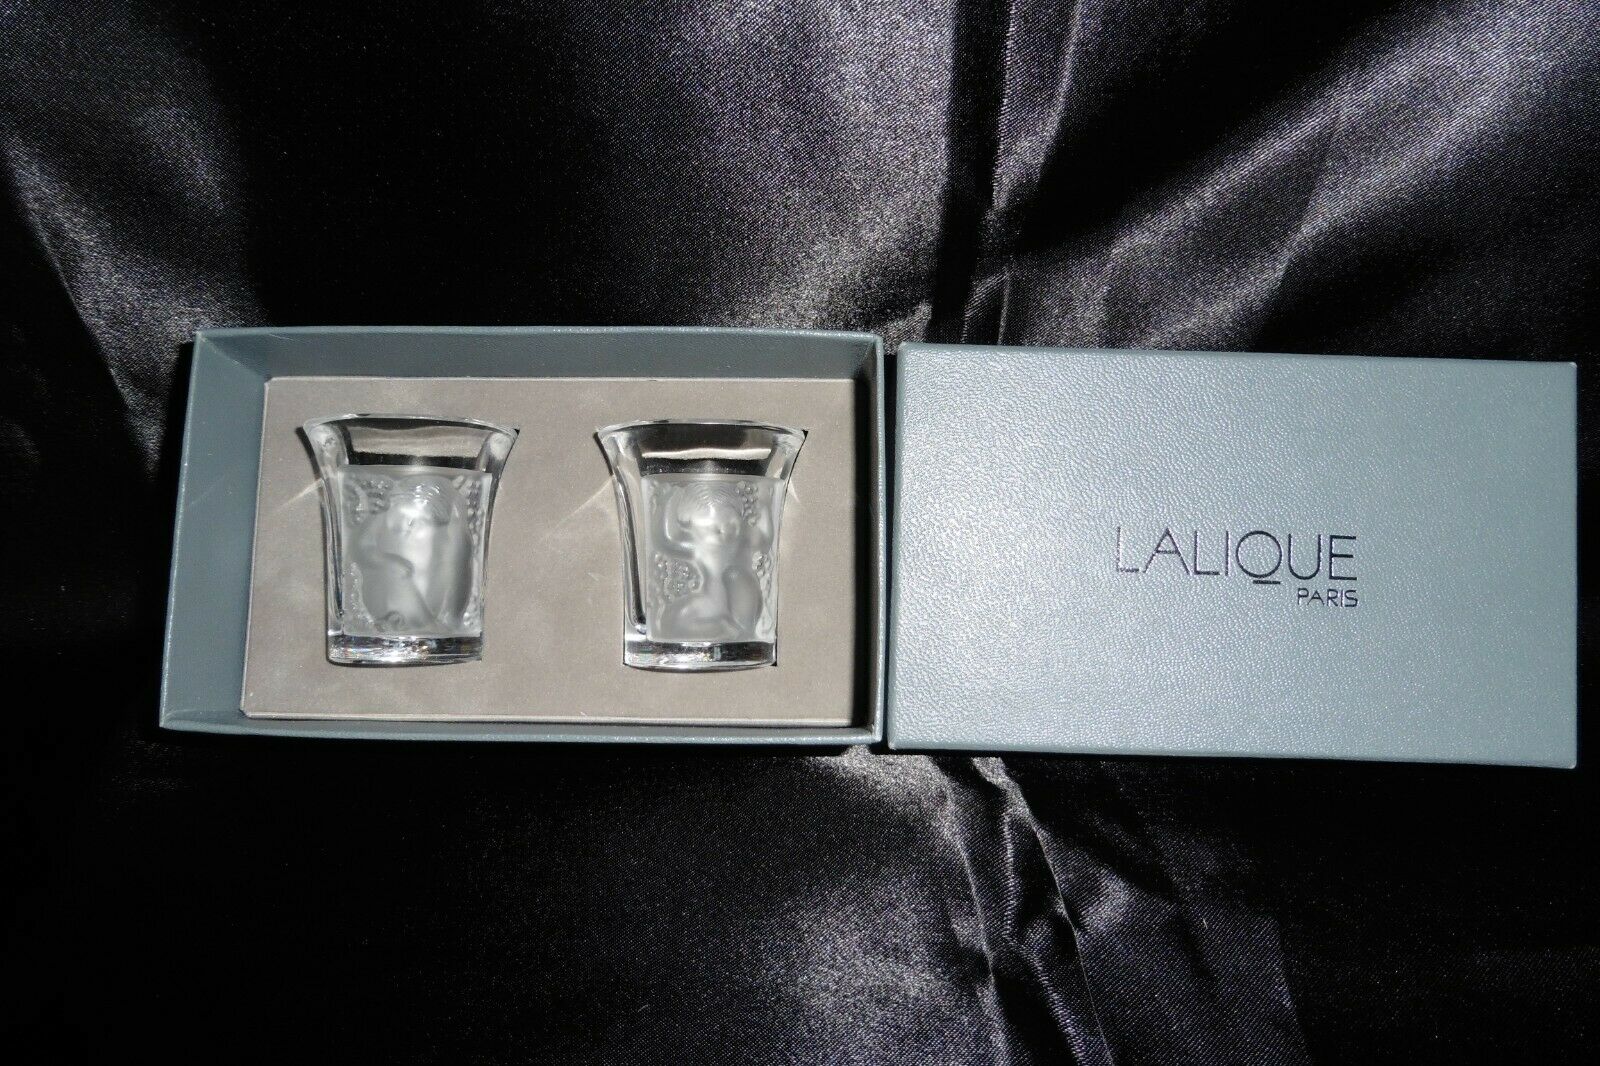 Lalique Enfants Liquor Crystal Shot Glasses - Pair - Signed France